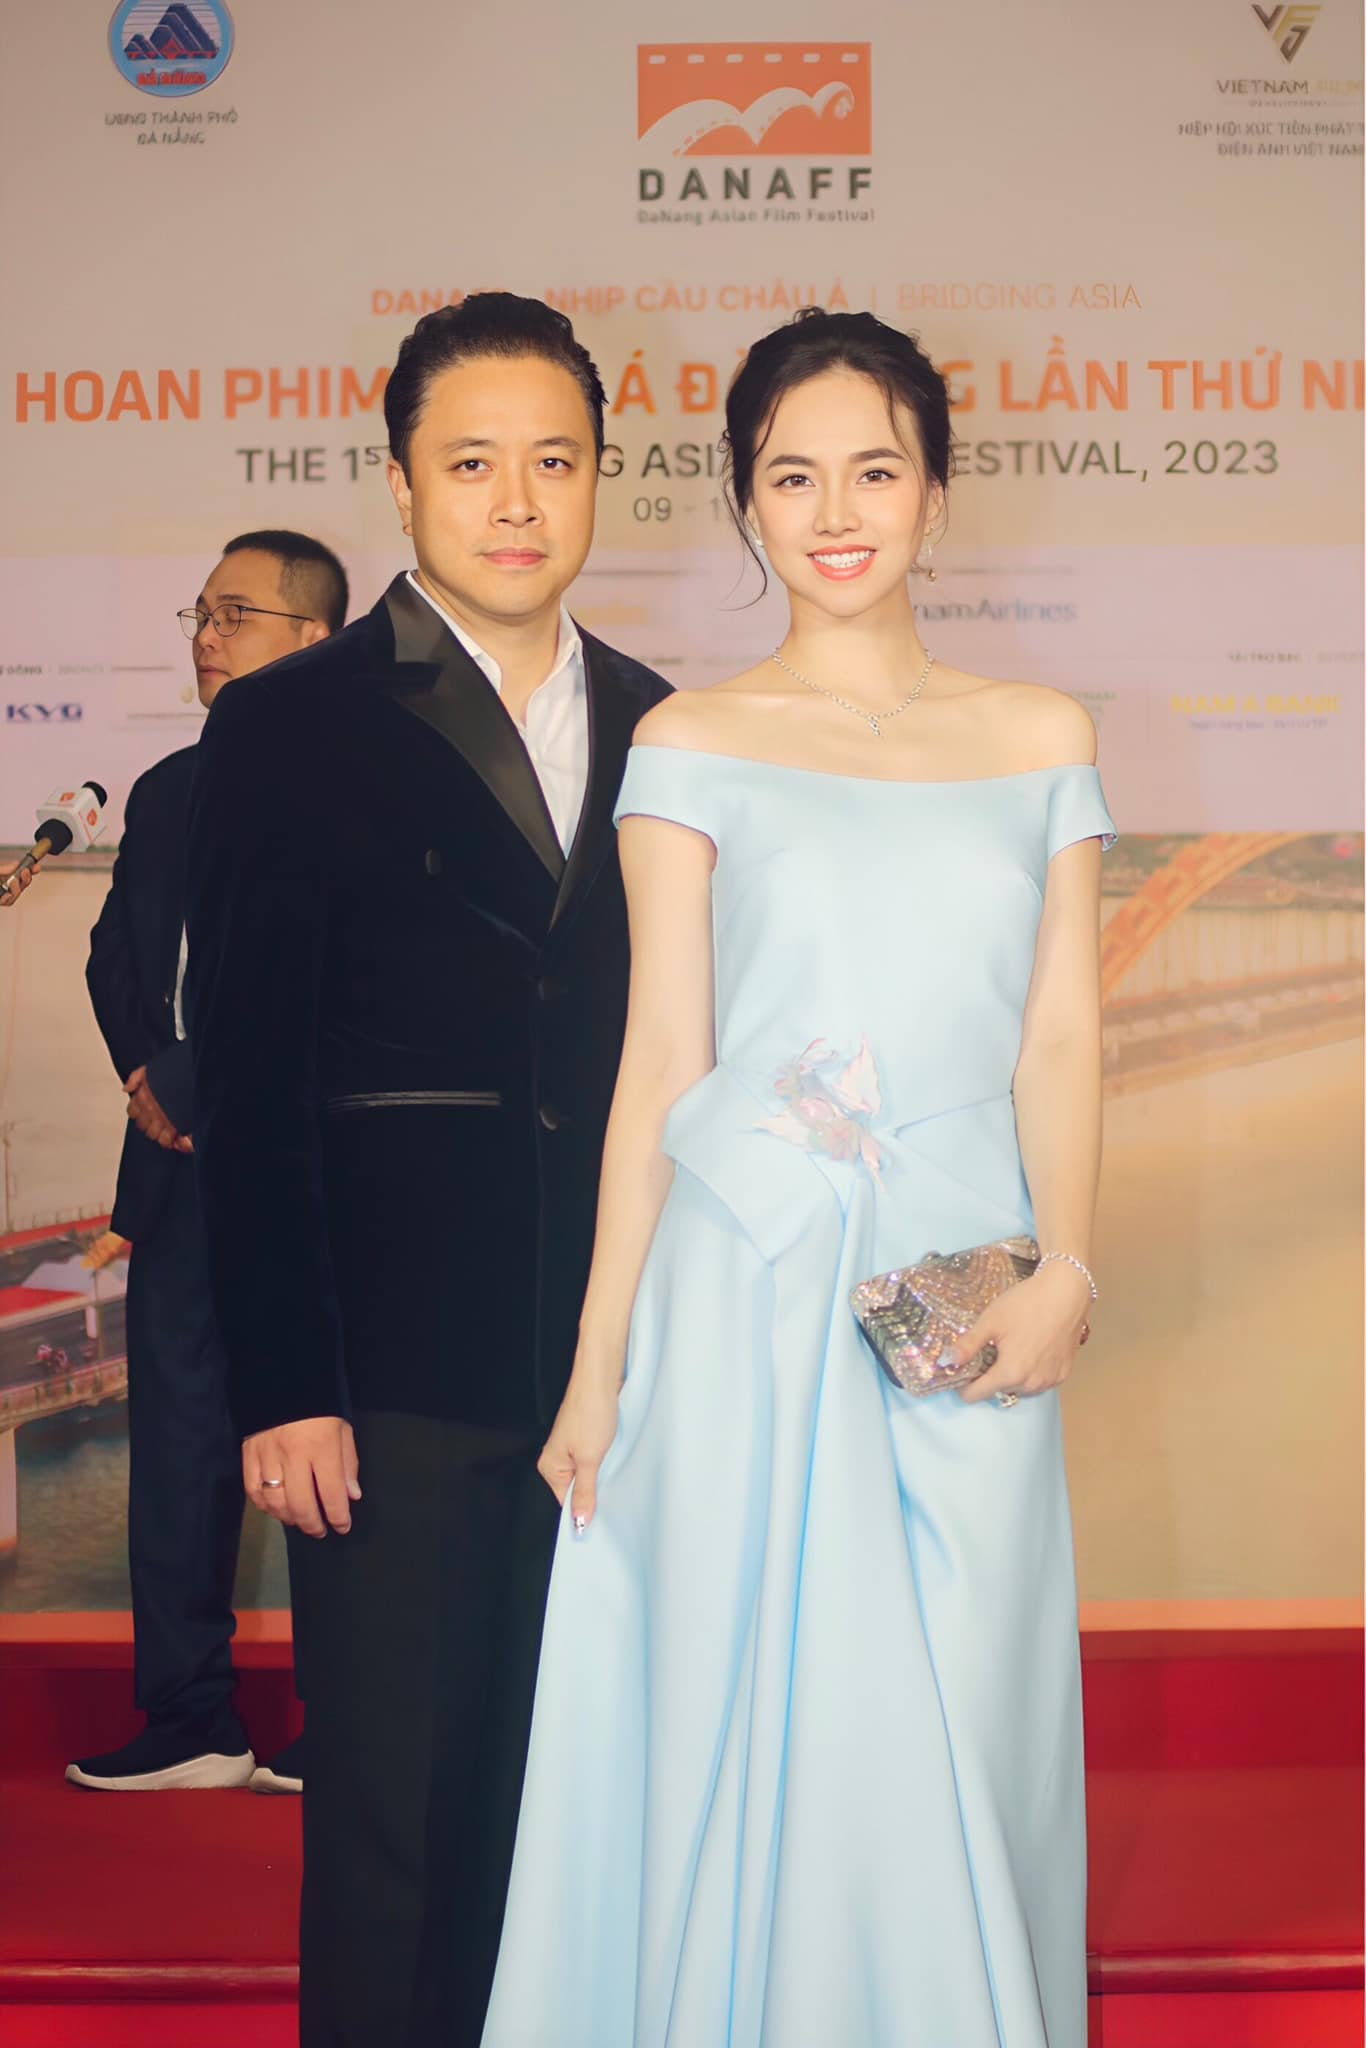 Lần gần nhất Đinh Ngọc Diệp xuất hiện trước công chúng là trong sự kiện Liên hoan phim châu Á Đà Nẵng 2023